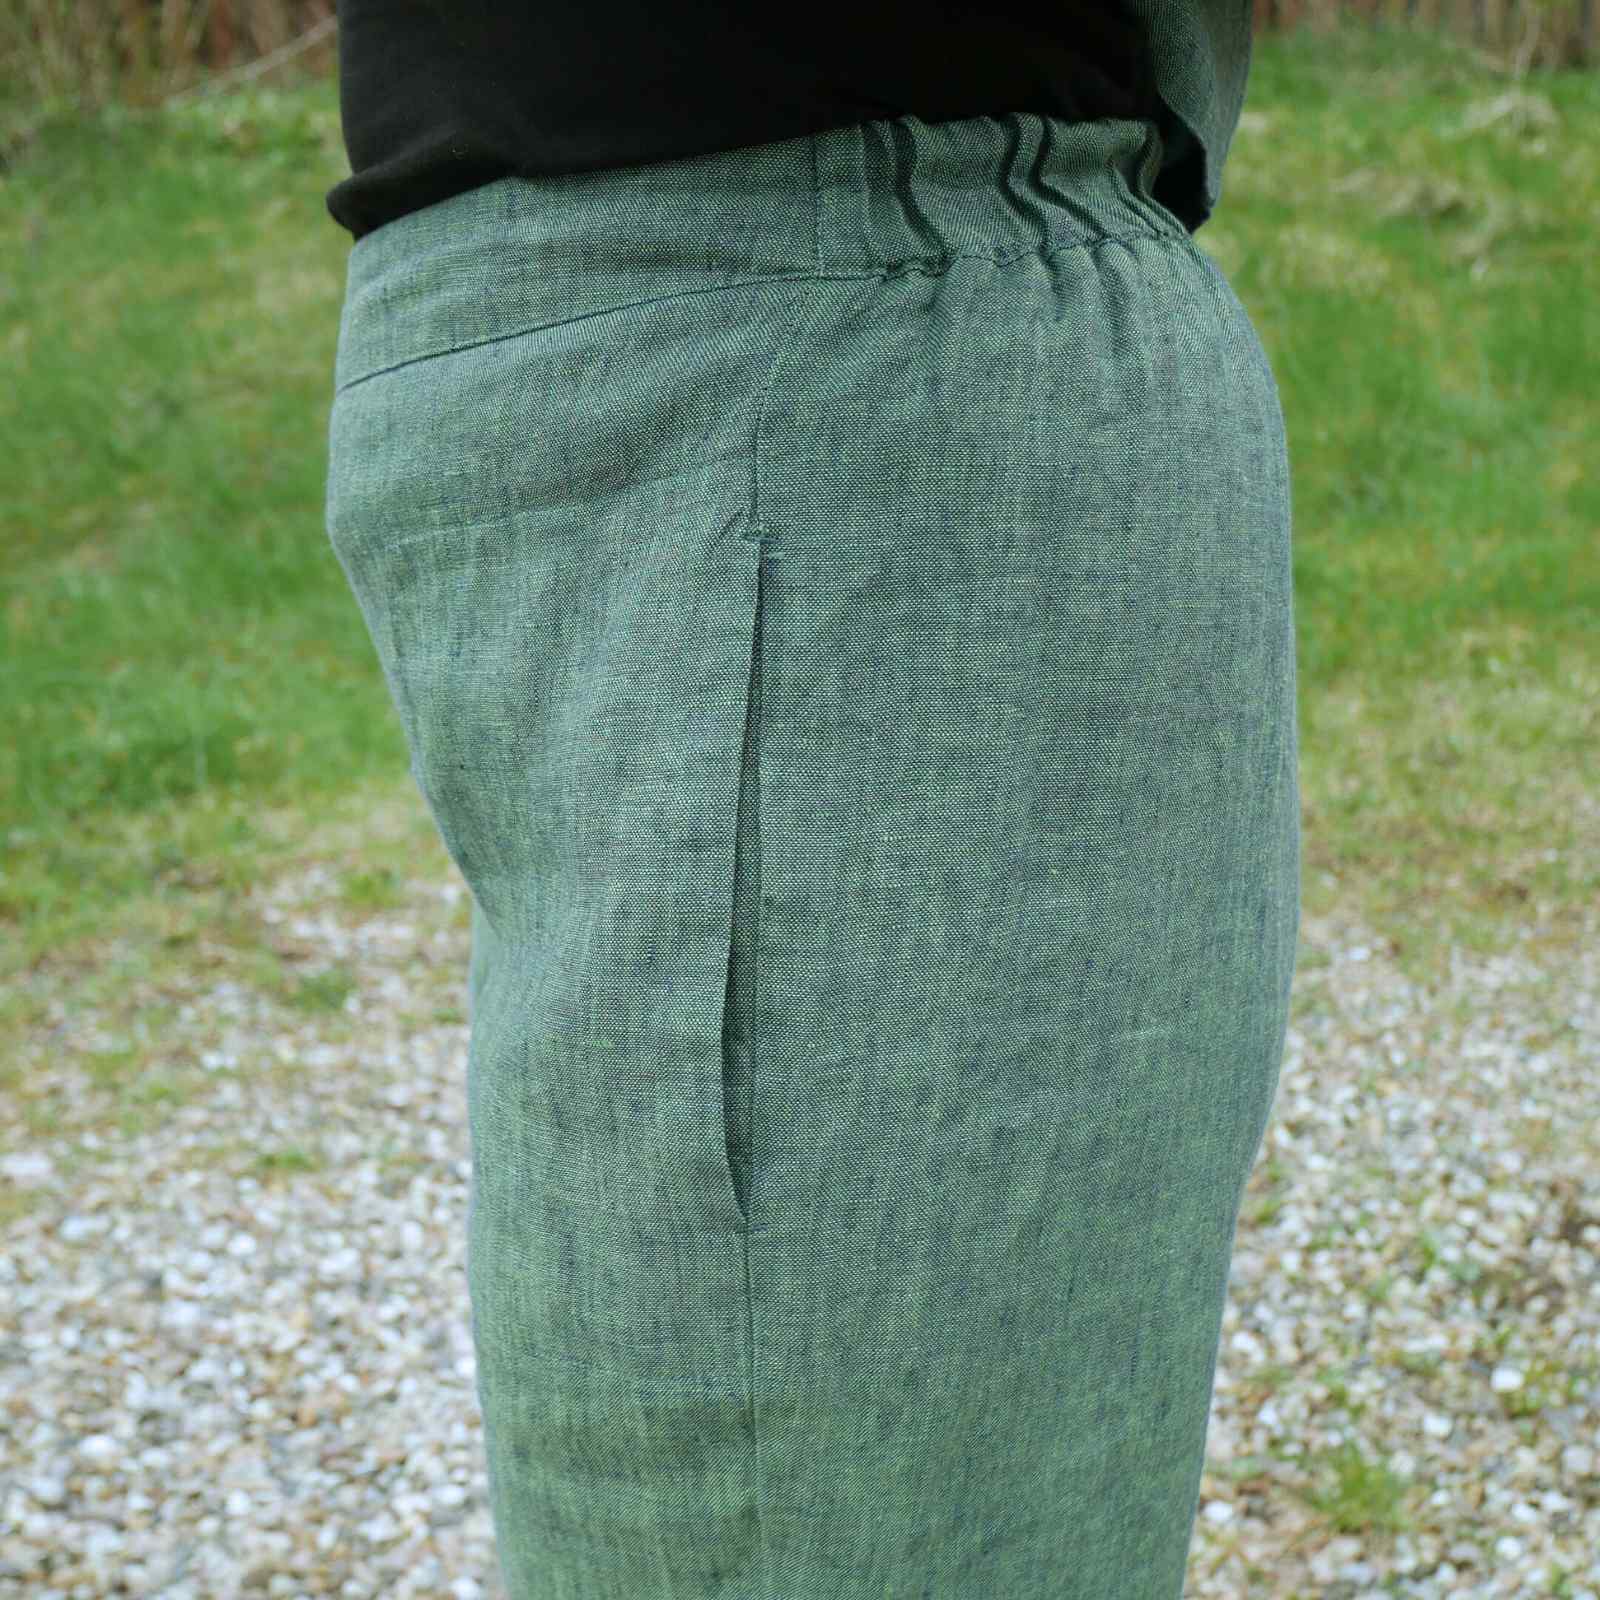 grønne hørbukser med elastik i lænden fra siden.